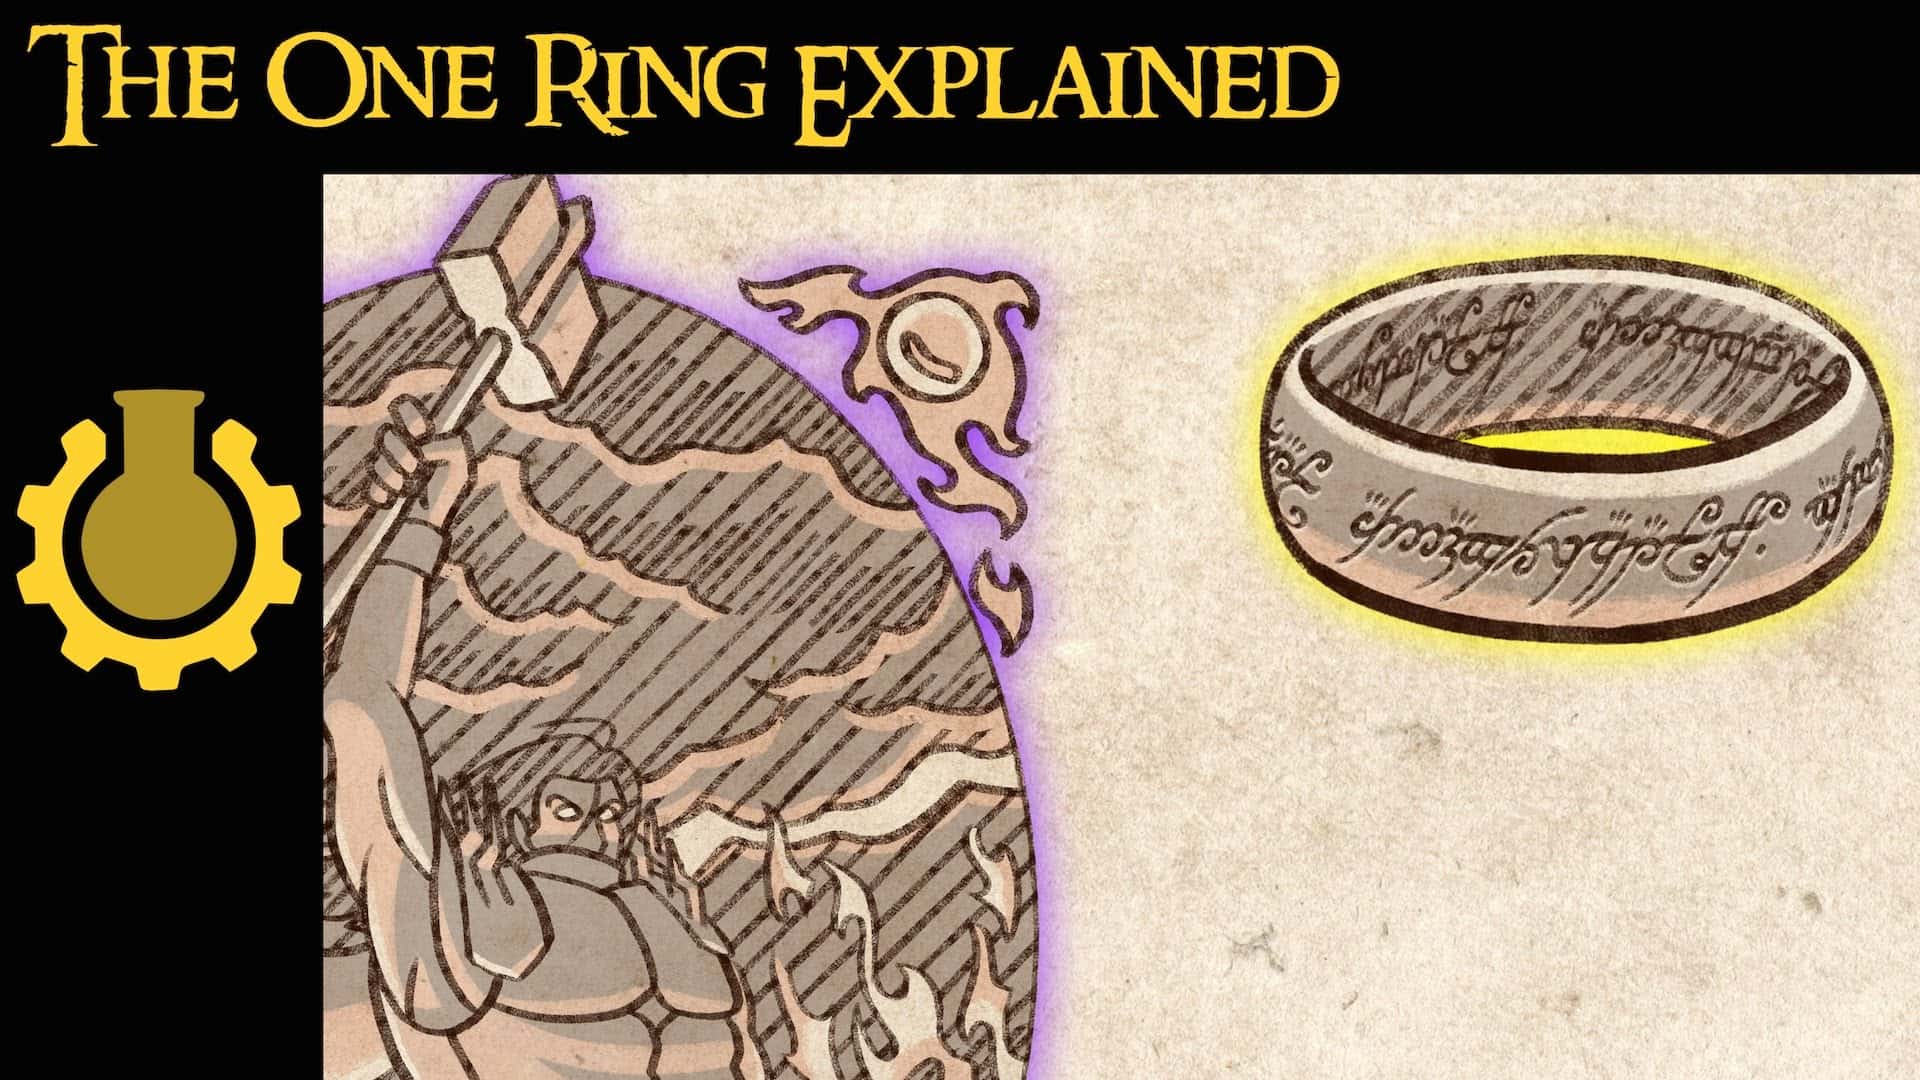 Os poderes de um anel explicado